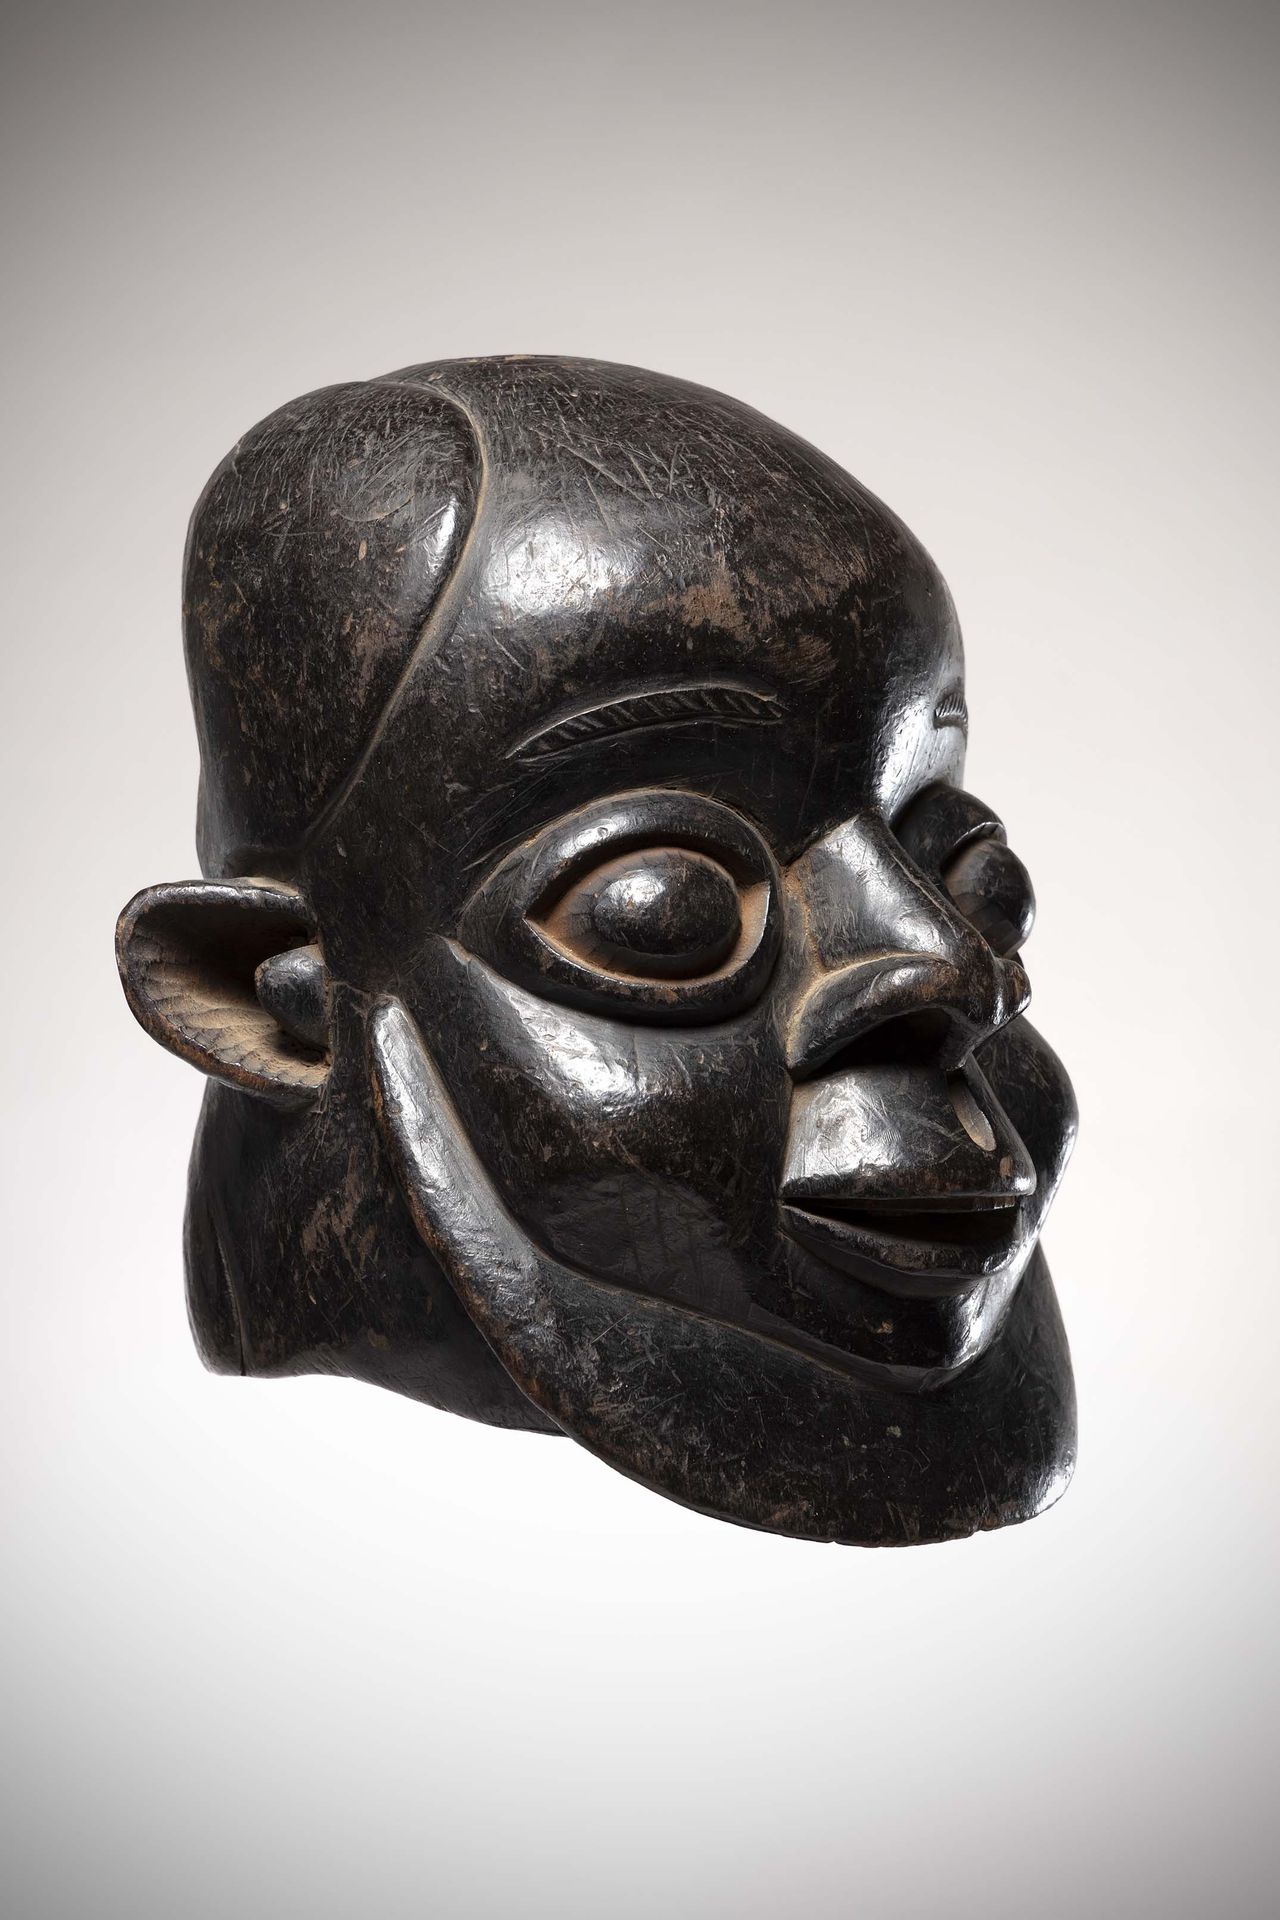 Null Békom

(喀麦隆)男性头盔面具，有深黑色铜锈。

在空腔中（眼睛、嘴巴、耳朵，残留着红赭石凸起的痕迹）。高：29厘米